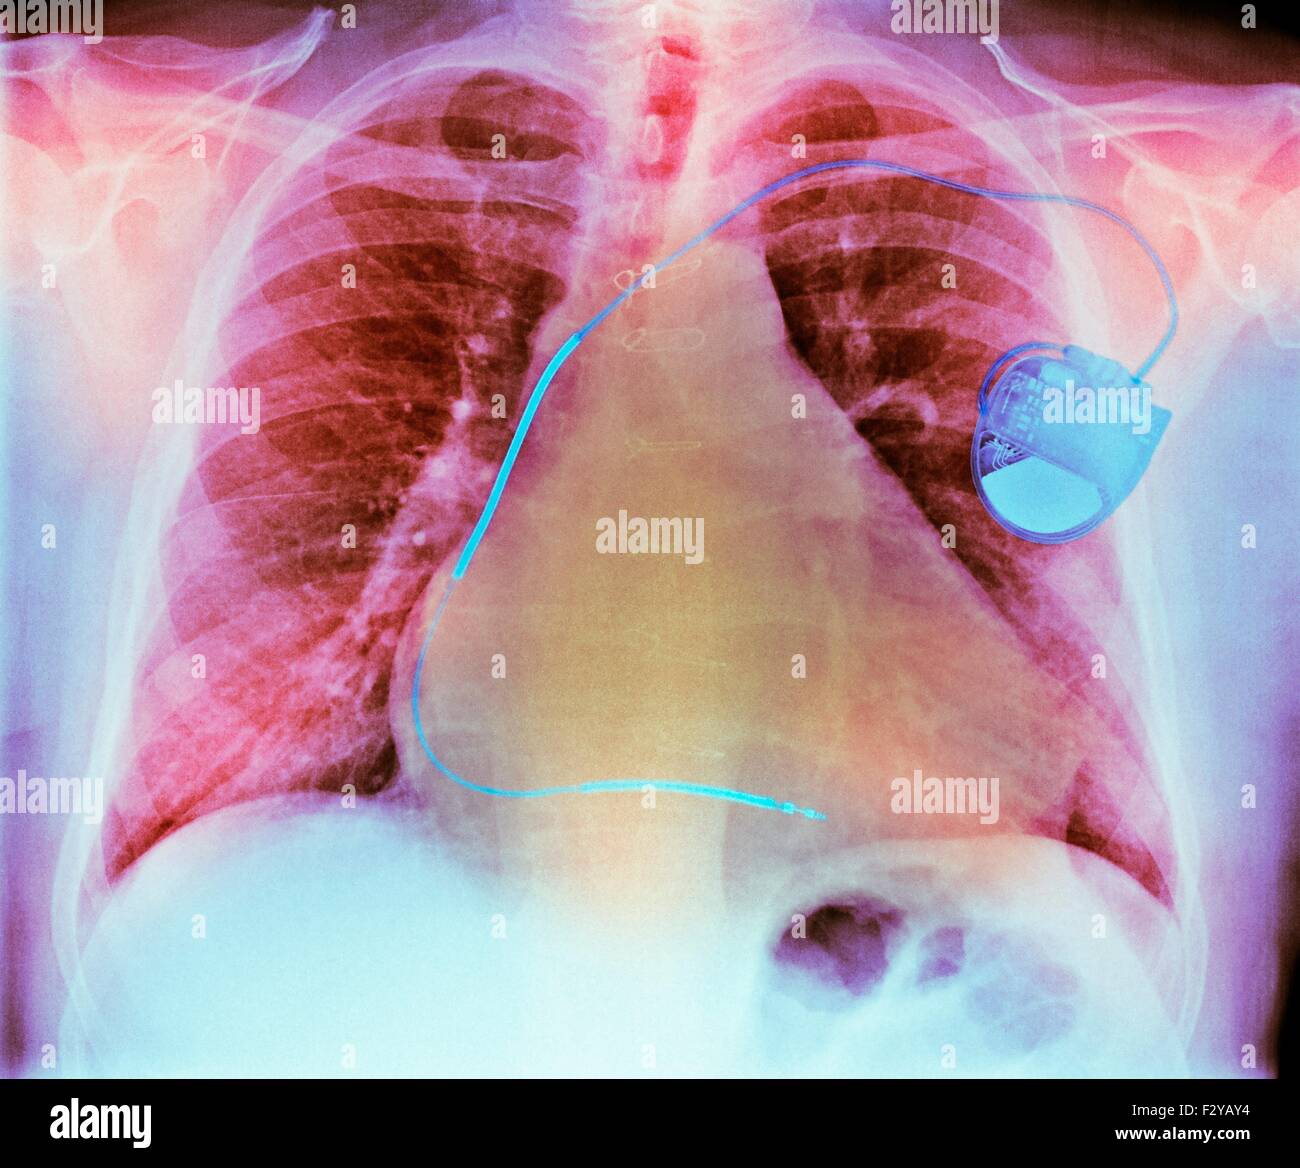 Pacemaker nella malattia di cuore. Colorato i raggi X al torace che mostra un pacemaker (destra) montato su un 73-anno-vecchio paziente di sesso maschile con un ingrandimento di un cuore (cardiomegaly) di fibrillazione atriale, malattia cardiaca ischemica e malattia polmonare ostruttiva cronica (COPD). Un pacemaker fornisce impulsi elettrici al cuore per mantenere il battito cardiaco a un ritmo regolare. Esso può essere esterna (indossato su una cintura) o interno (impiantato nel petto, come qui). Foto Stock